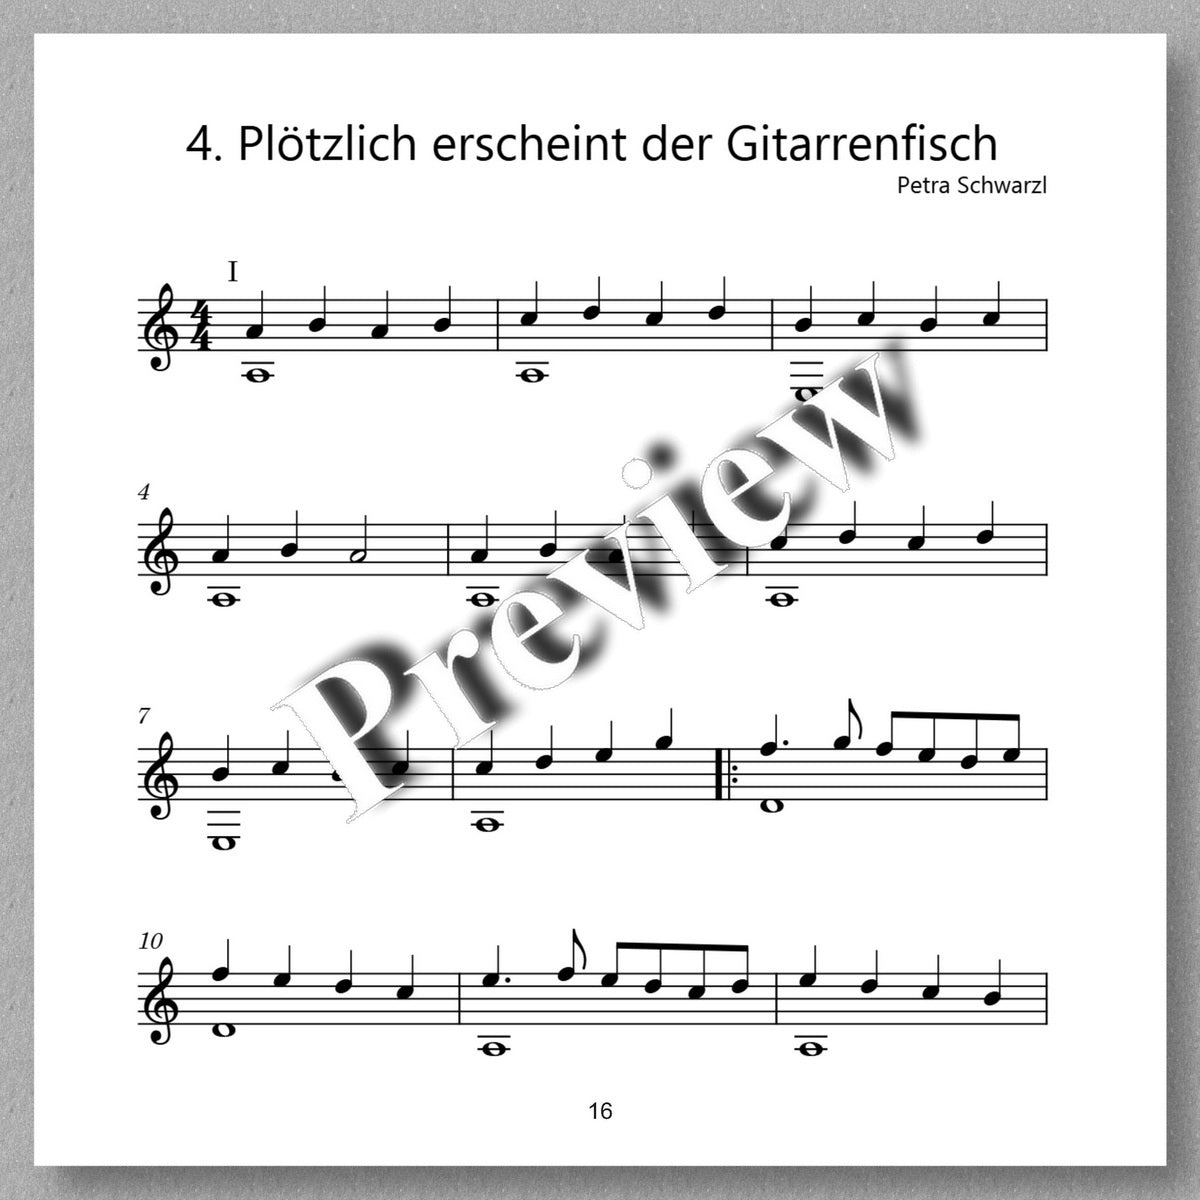 Der Gitarrenfisch by Petra Schwarzl - preview of the music 3